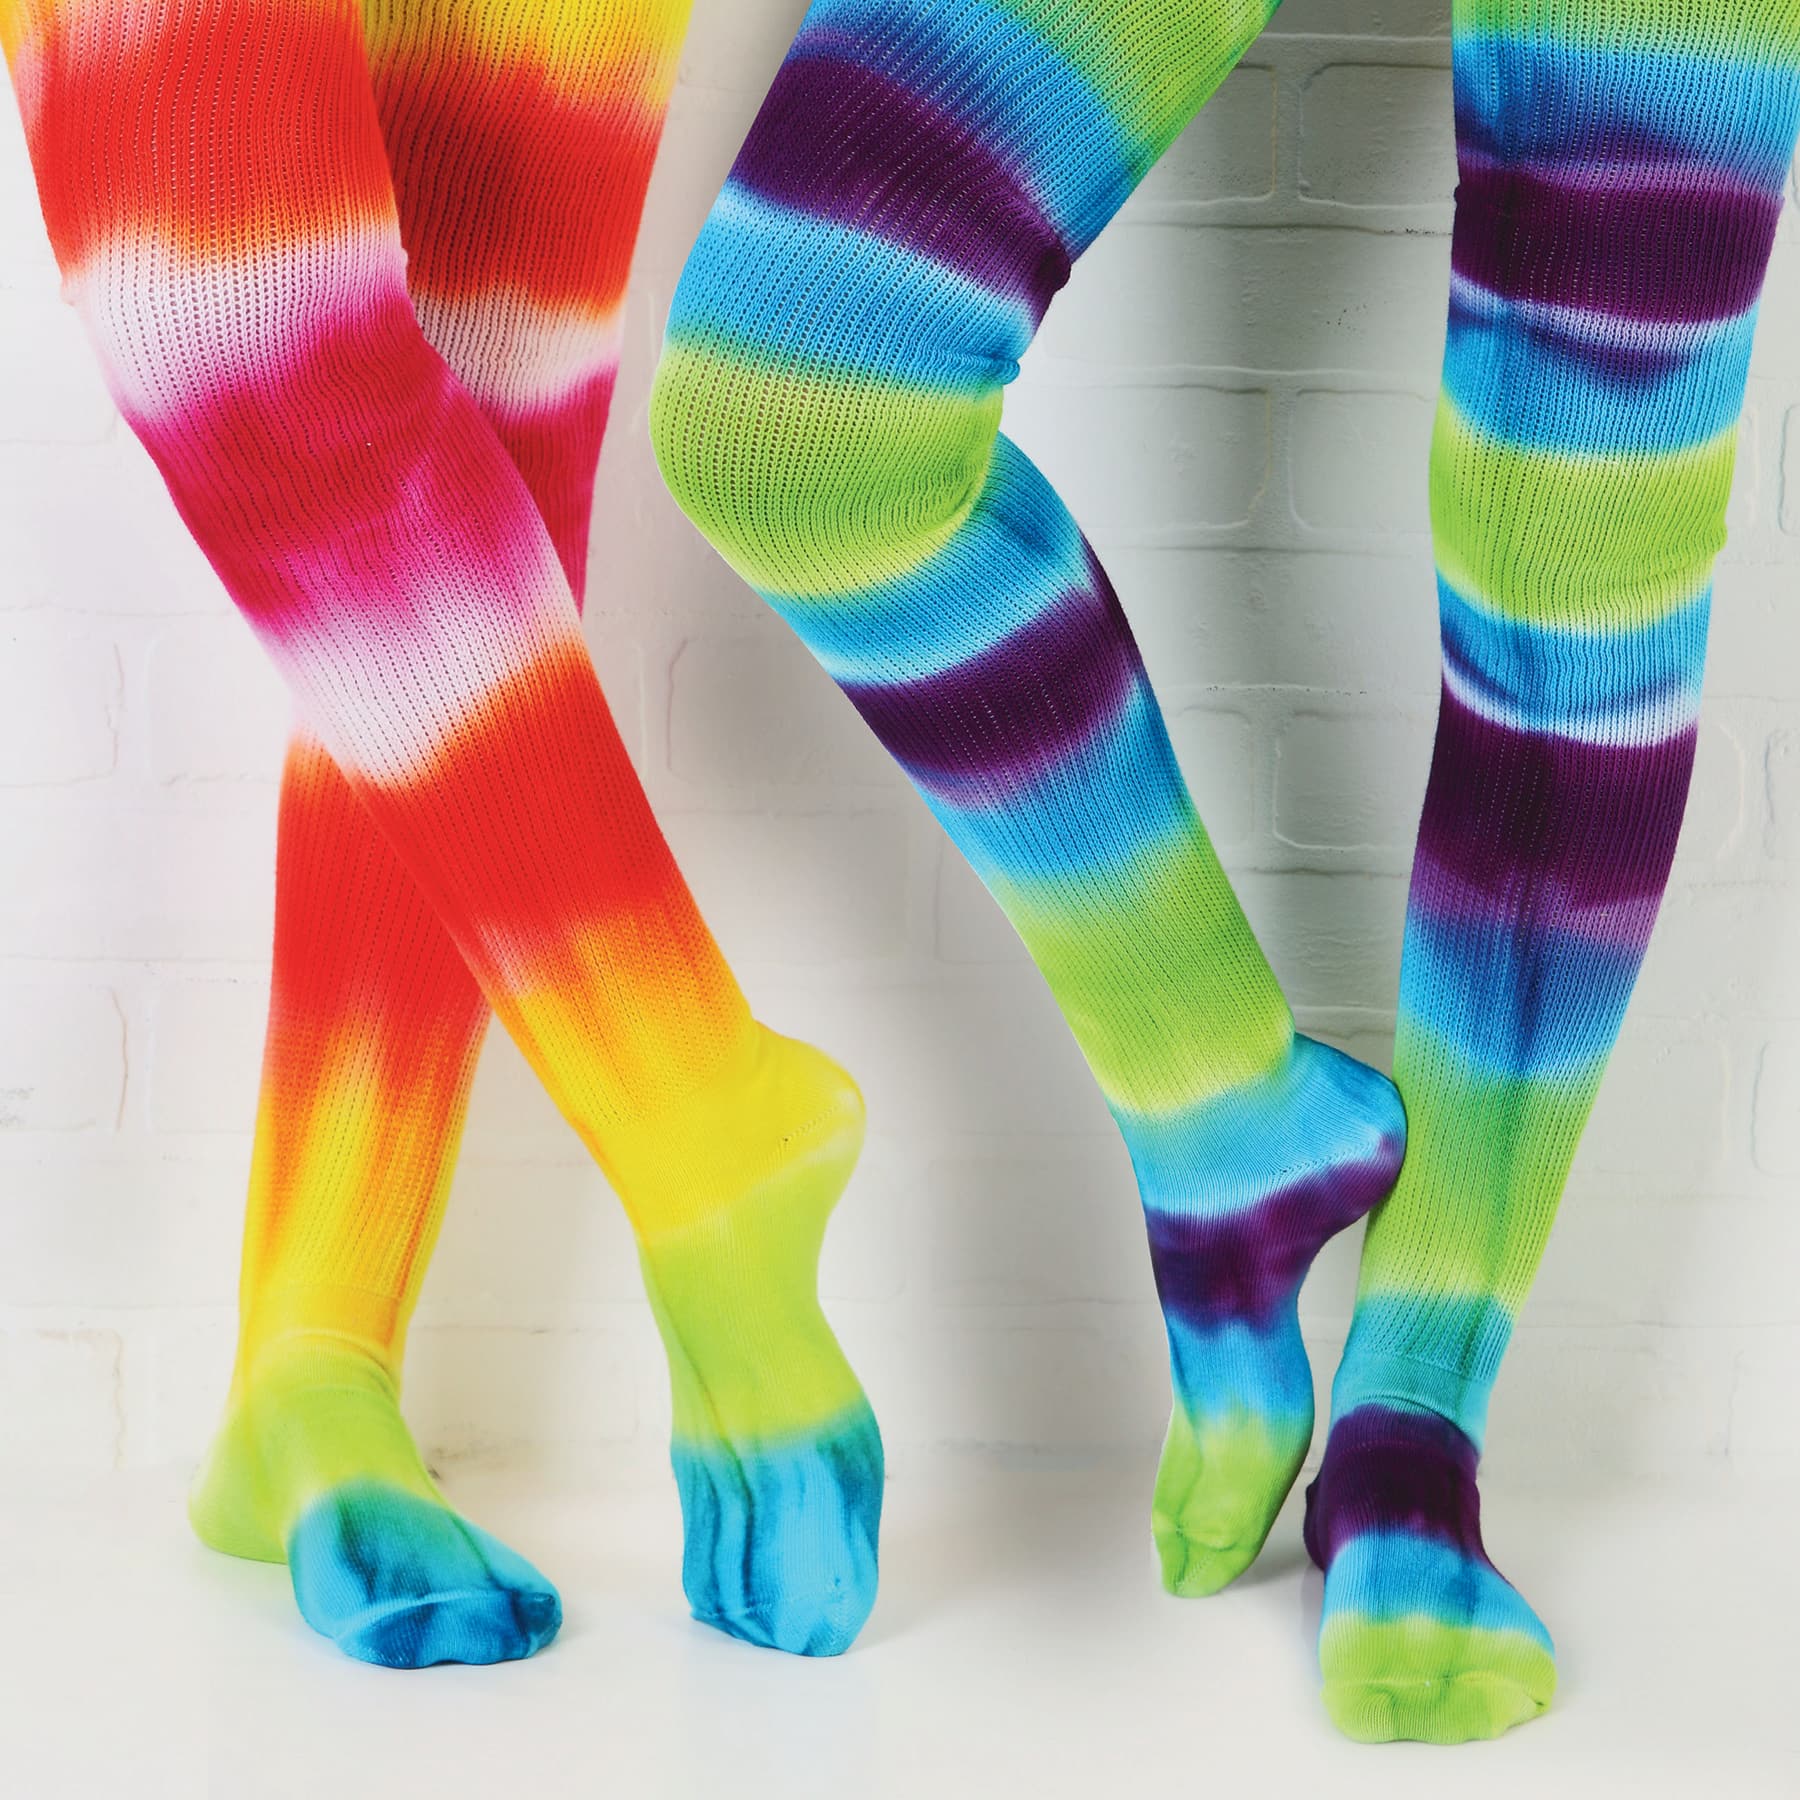 Tulip&#xAE; One-Step Tie-Dye Kit&#xAE;, Medium